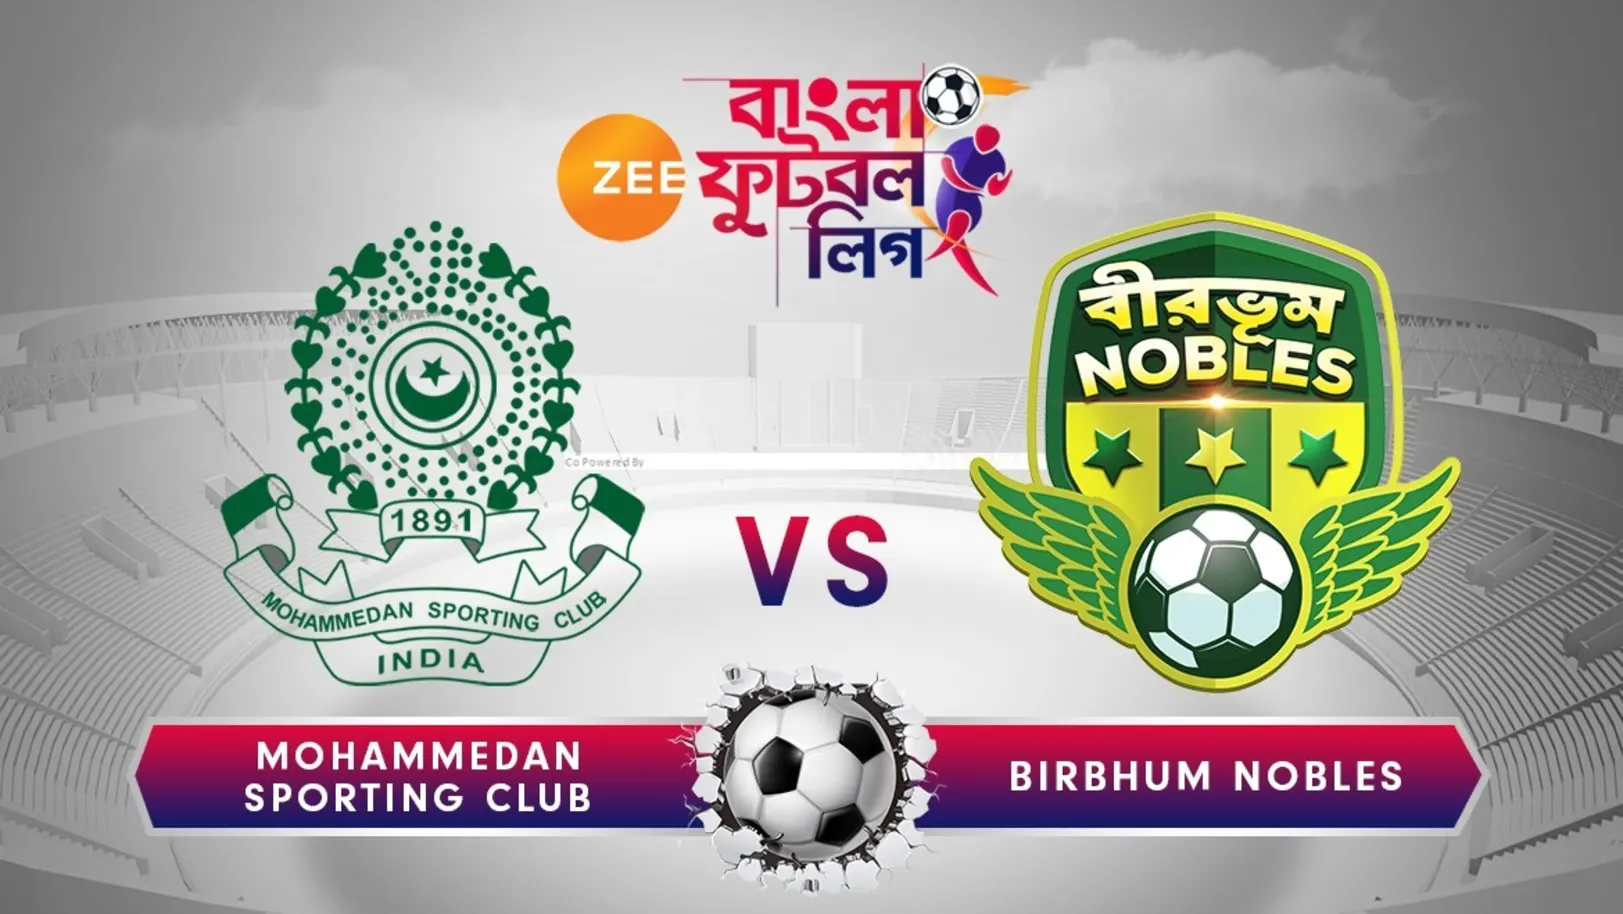 Mohammedan Sporting v/s Camelia Birbhum Nobles - June 15 - ZBFL 2019 Episode 33